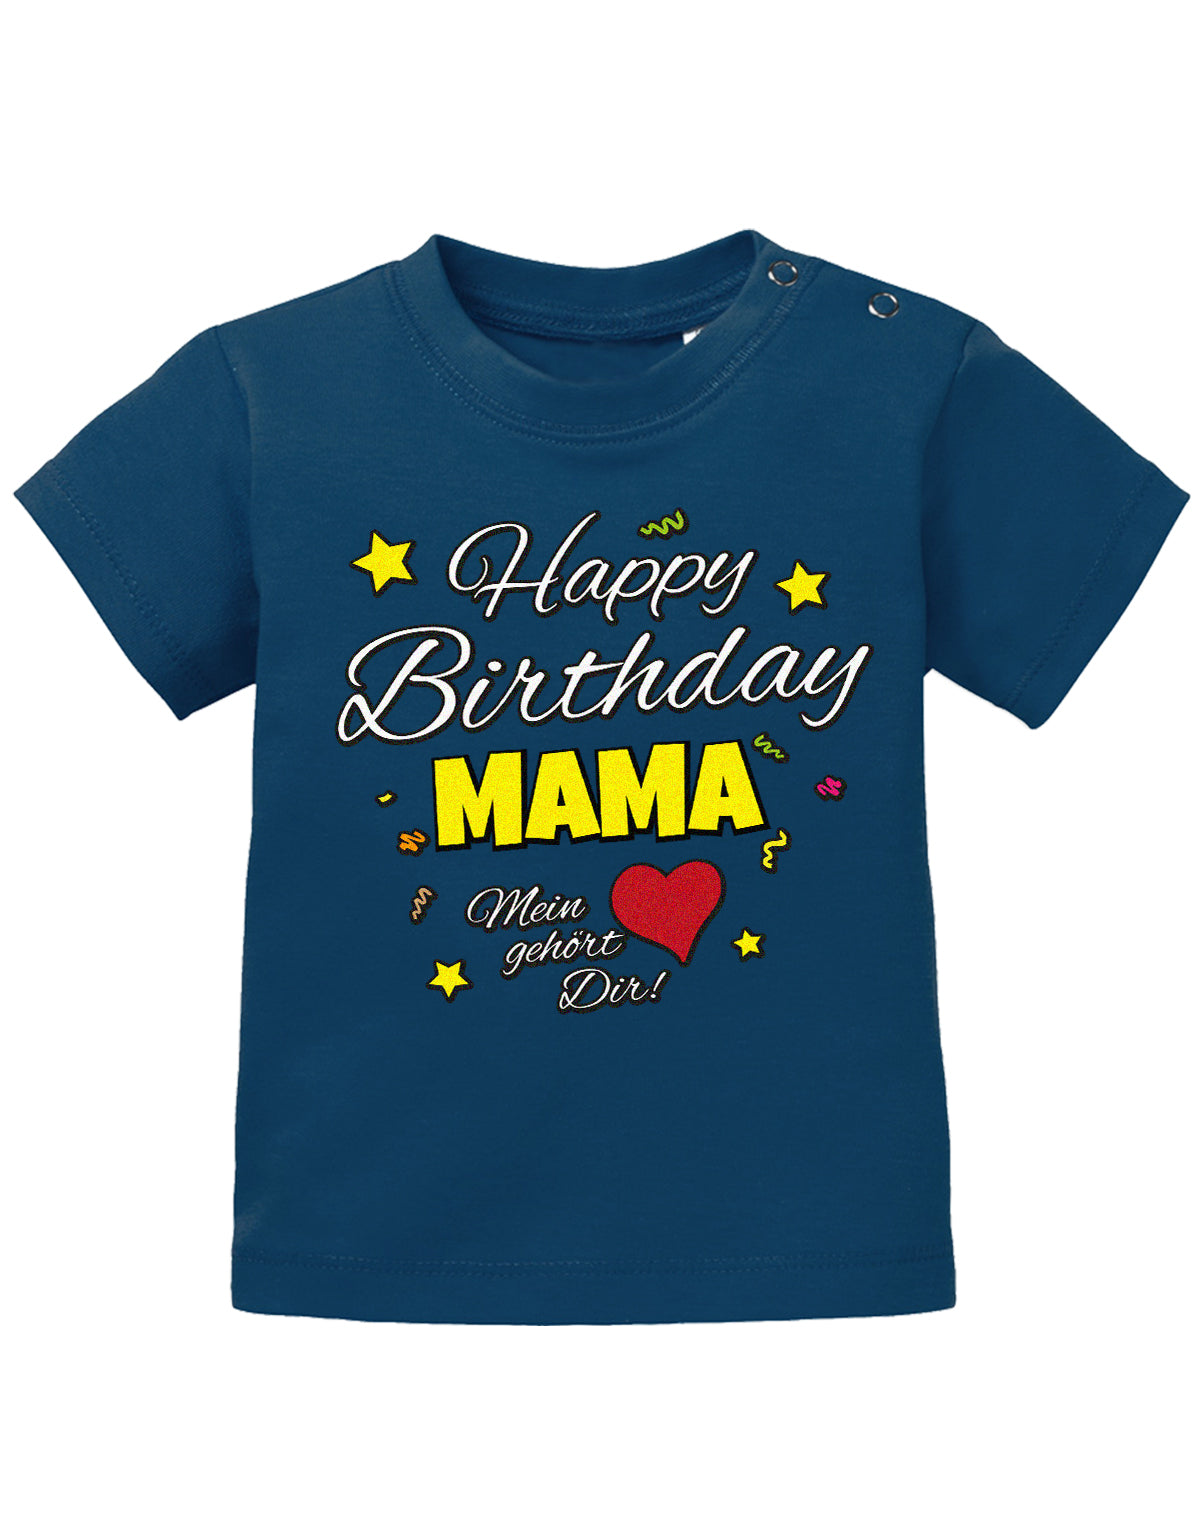 Mama Spruch Baby Shirt. Happy Birthday Mama, Mein Herz gehört dir. Navy